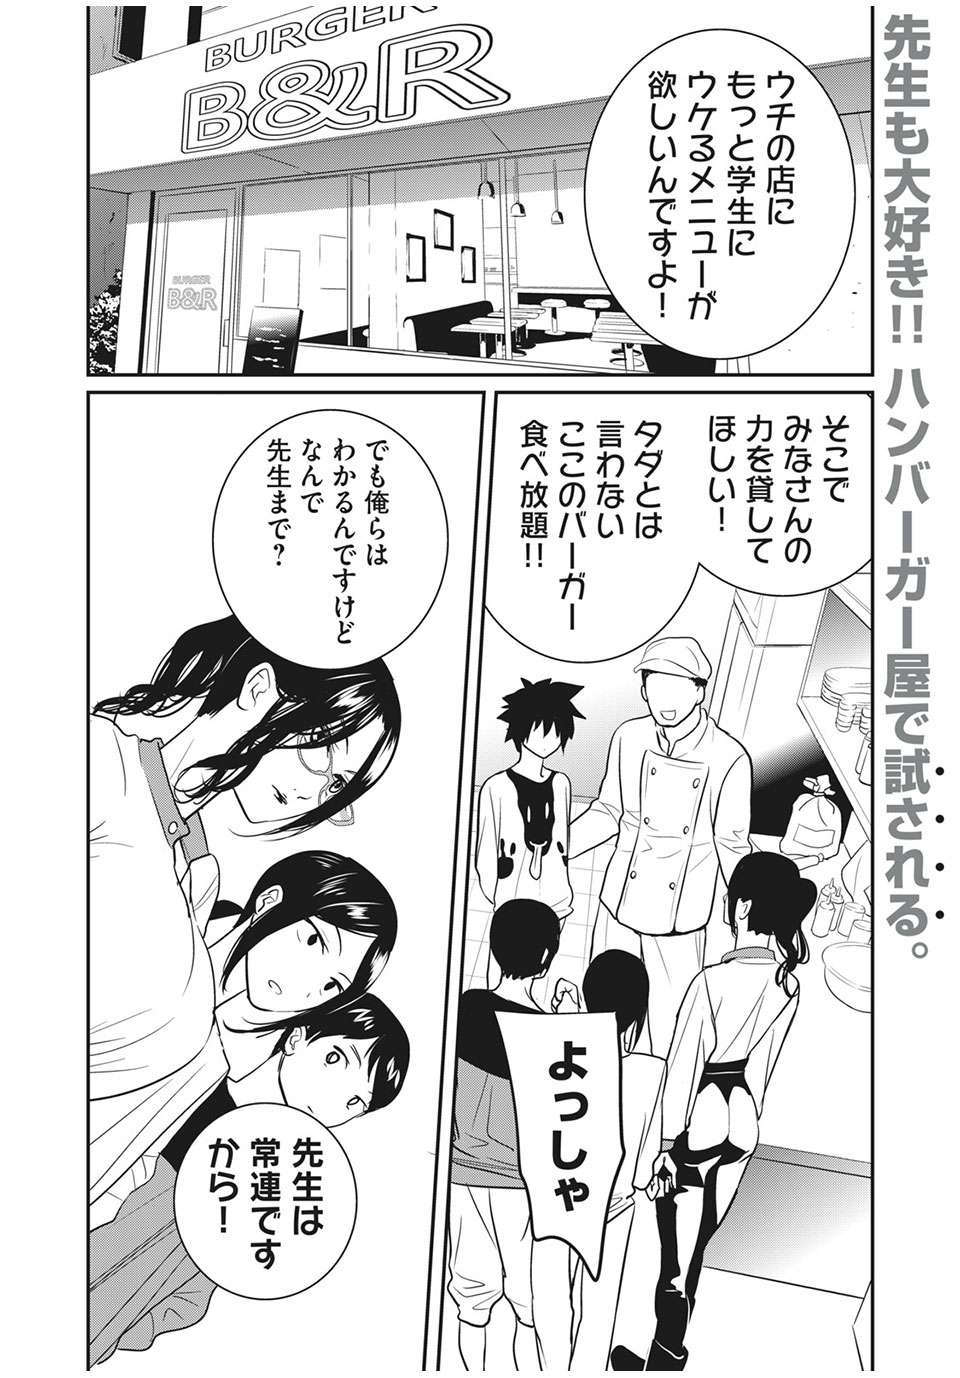 Eigo ×× Sensei - Chapter 21 - Page 2